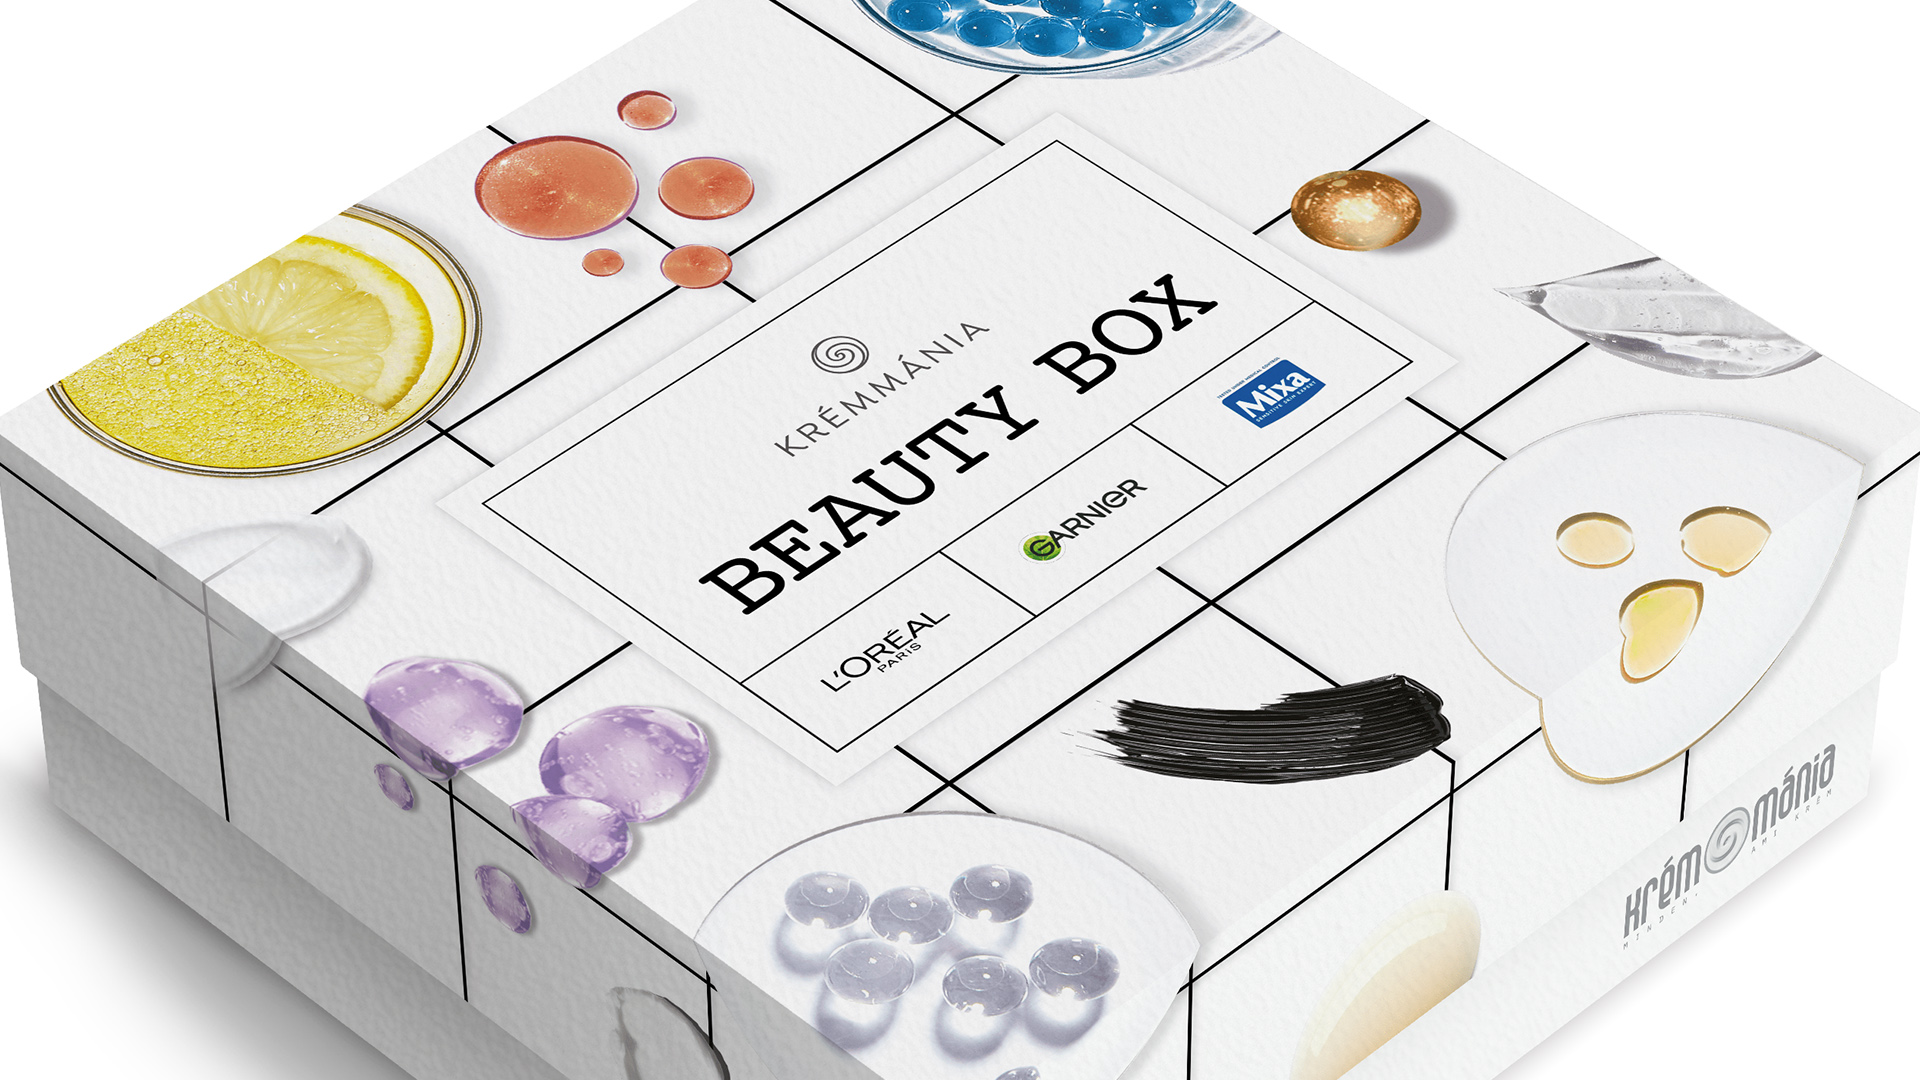 18. Krémmánia Beauty Box - L'Oreal Monobox